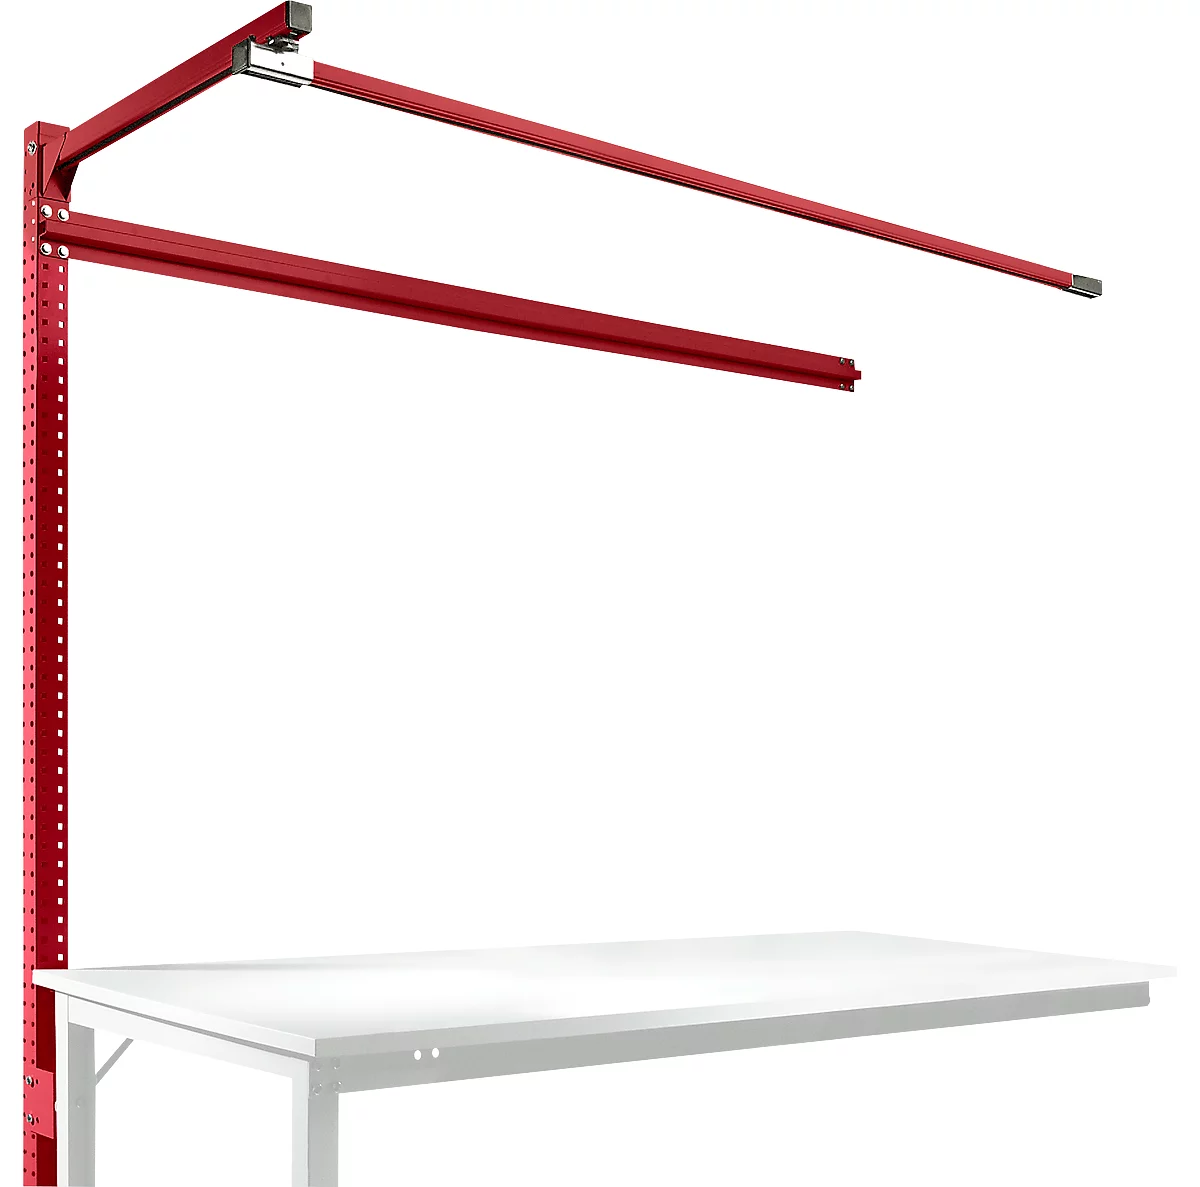 Estructura pórtica adicional con brazo saliente, Mesa de extensión STANDARD mesa de trabajo/banco de trabajo UNIVERSAL/PROFI, 1750 mm, rojo rubí